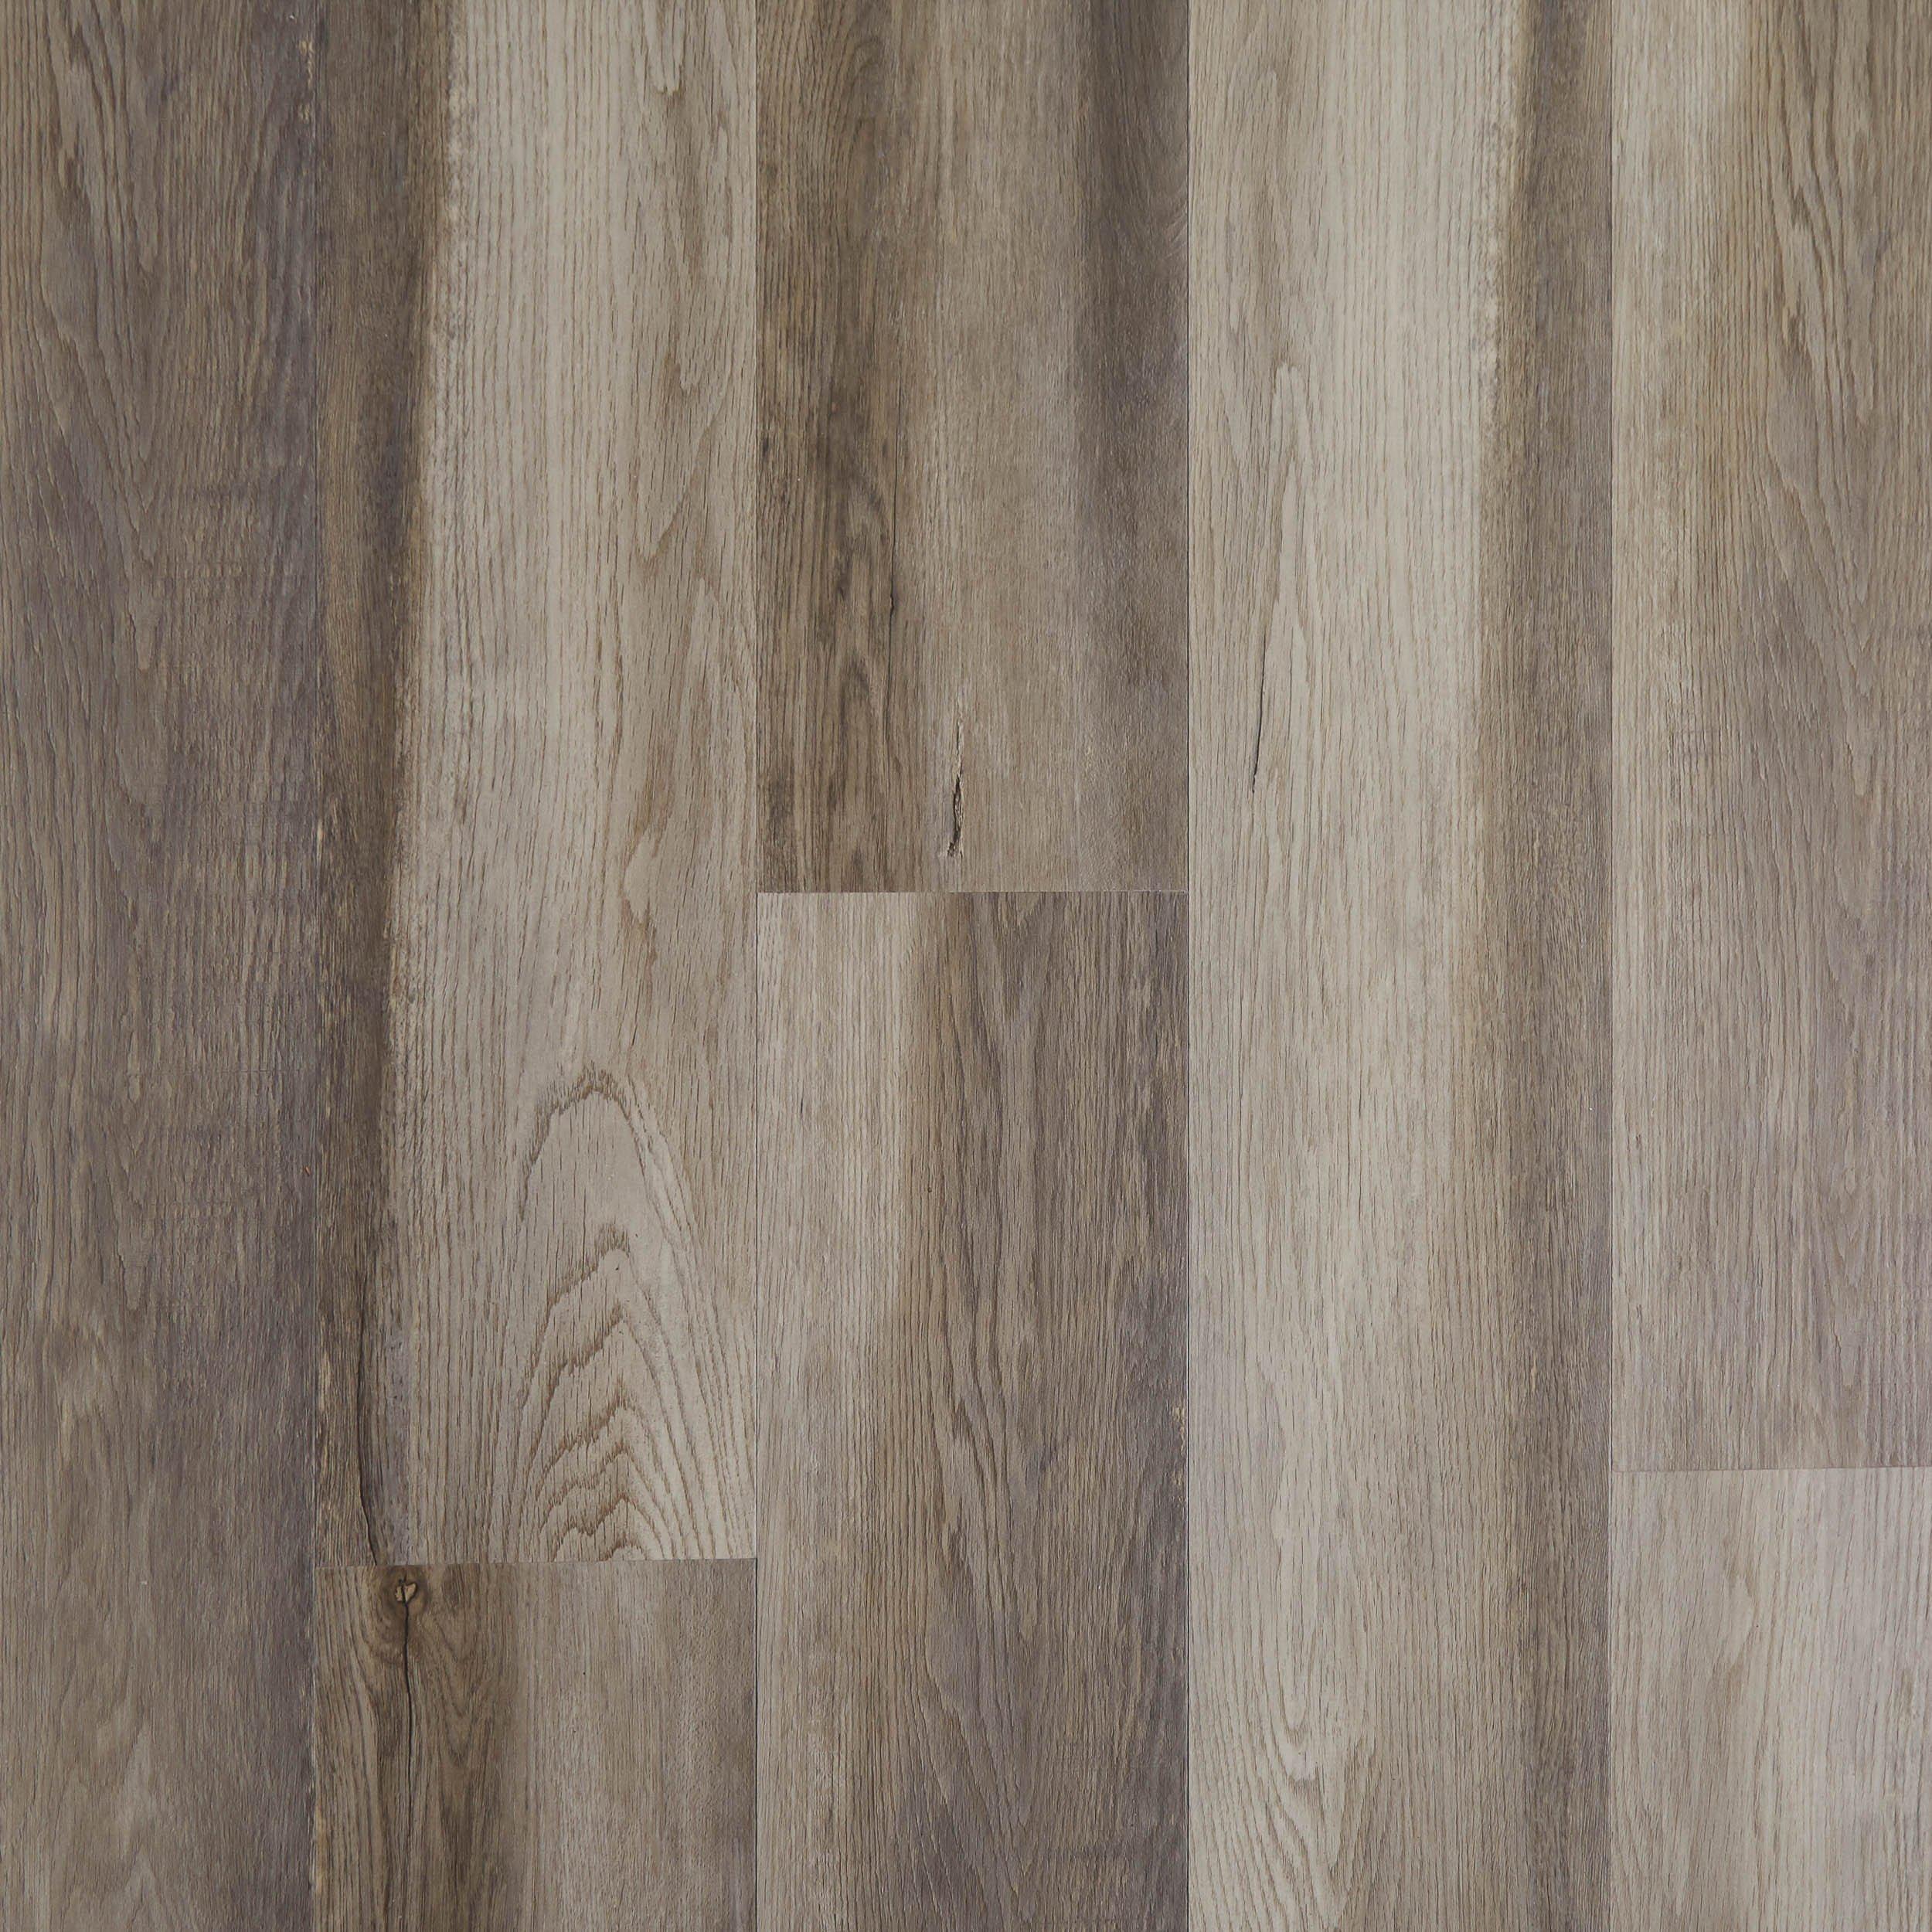 Windmill Oak Rigid Core Luxury Vinyl Plank - Foam Back | Floor and Decor